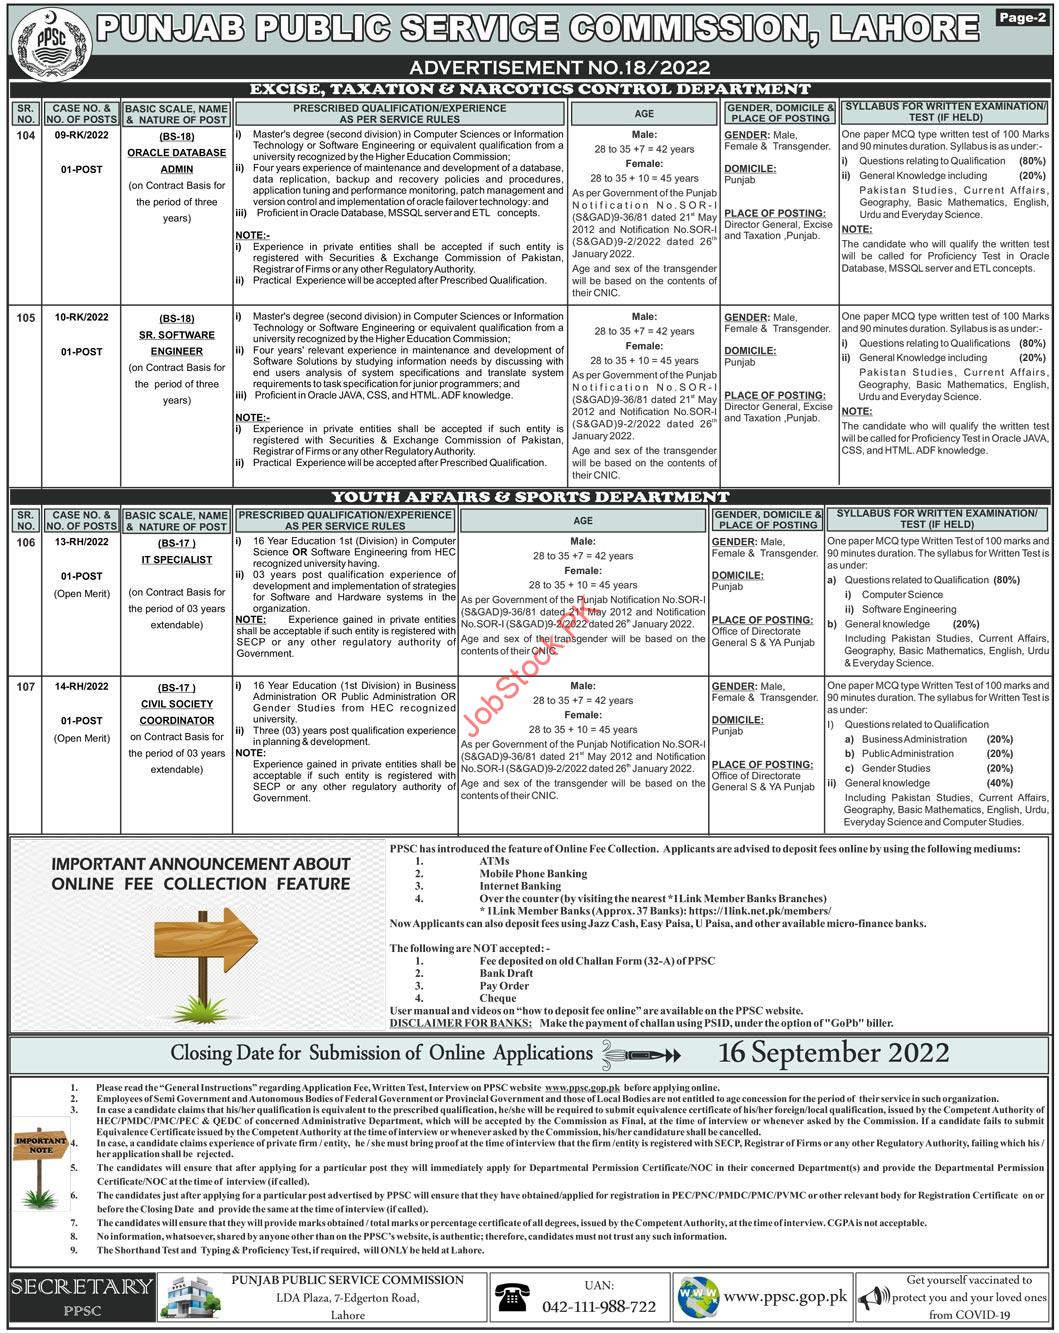 PPSC Job Advertisement No. 18/2022 – Punjab Public Service Commission